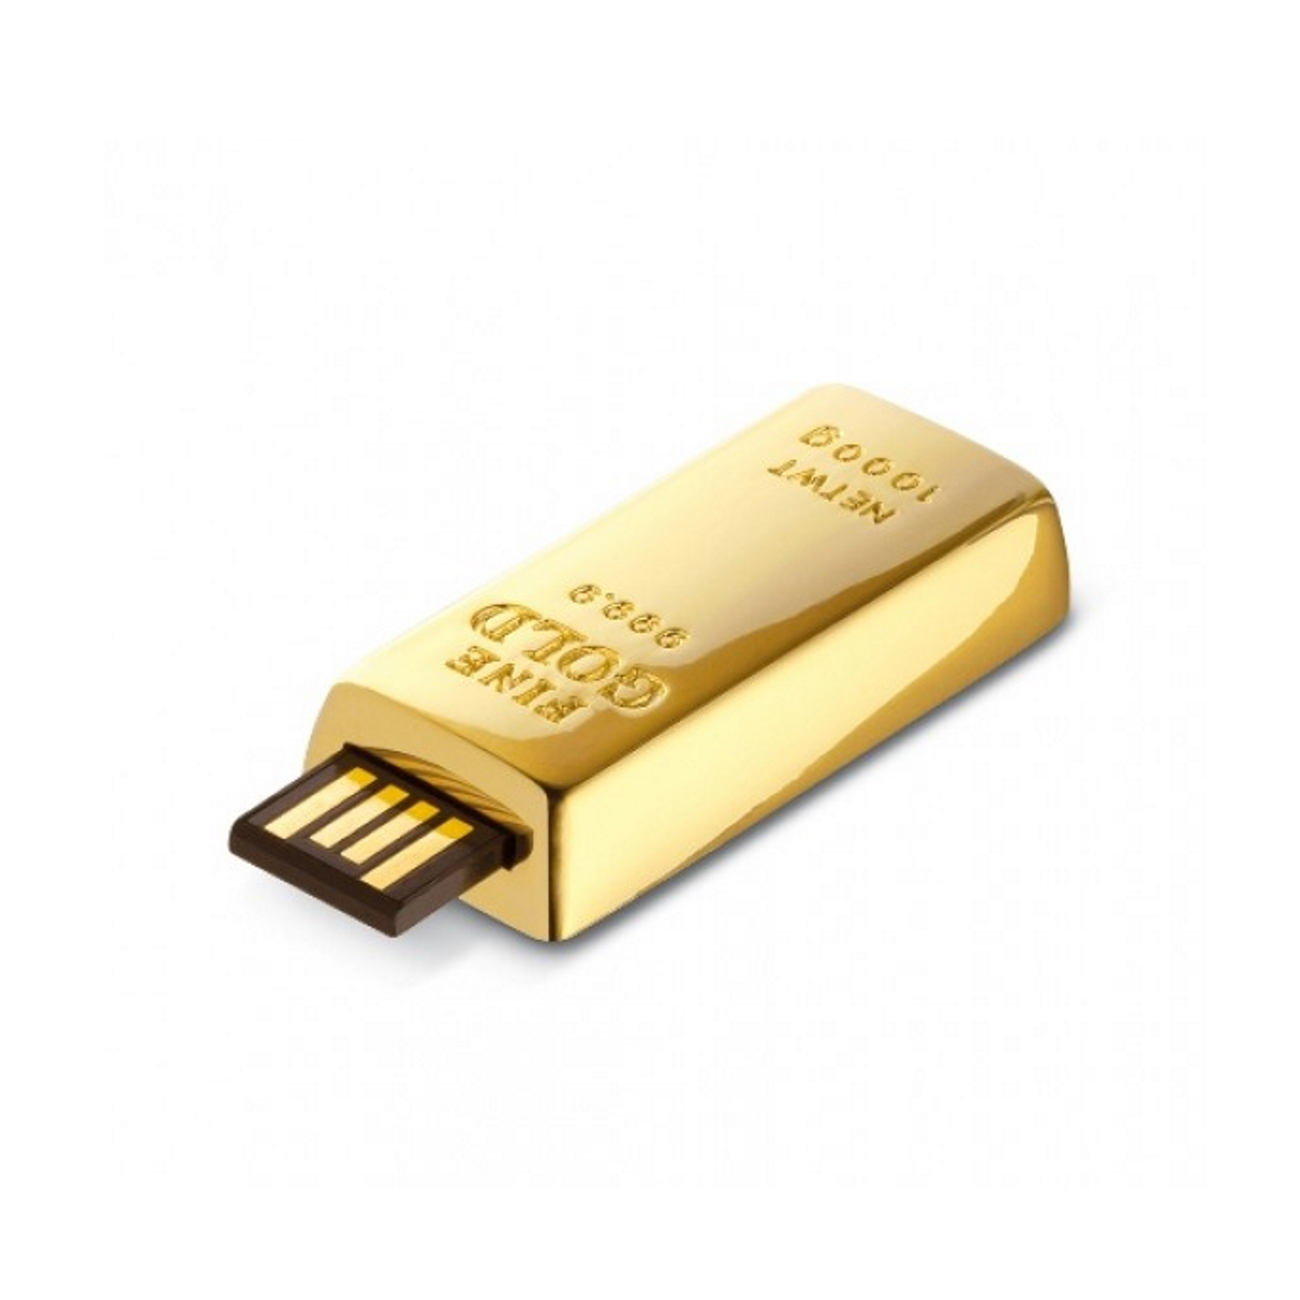 ® GERMANY GB) Goldbarren USB-Stick (Gold, 1 USB